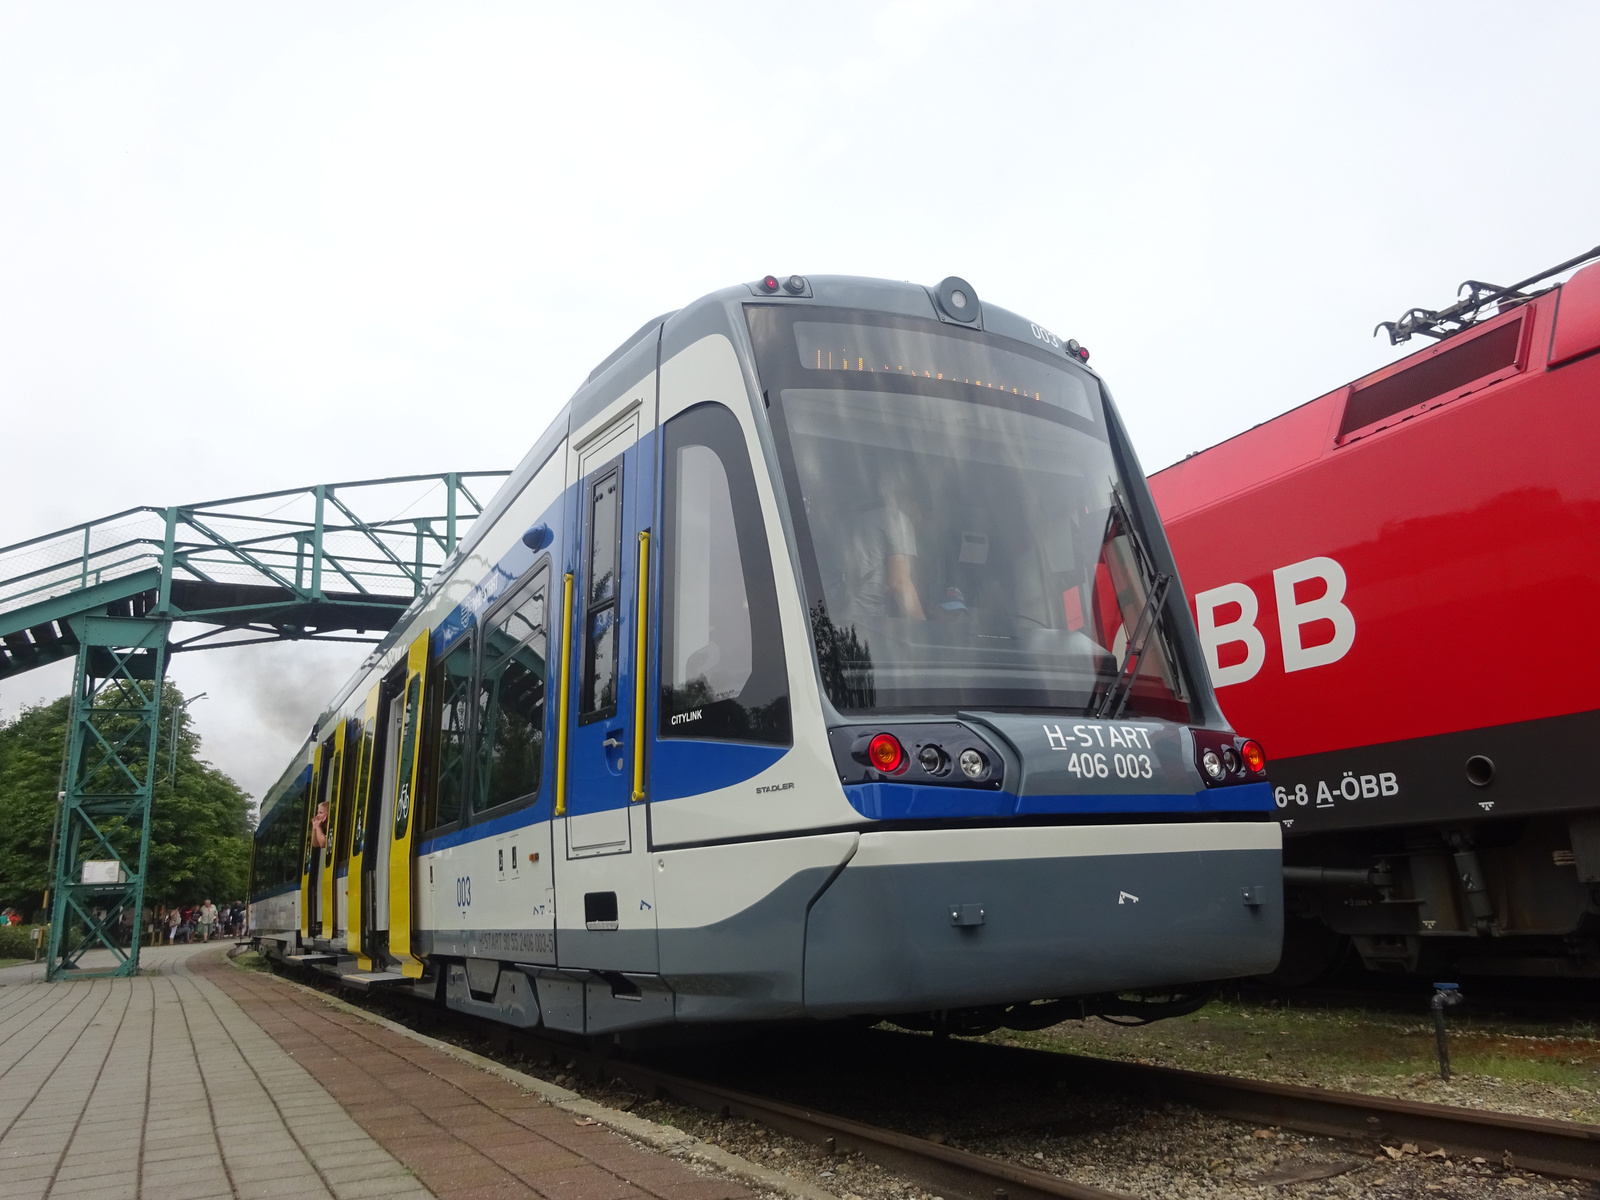 Stadler Citylink[Tram-Train]